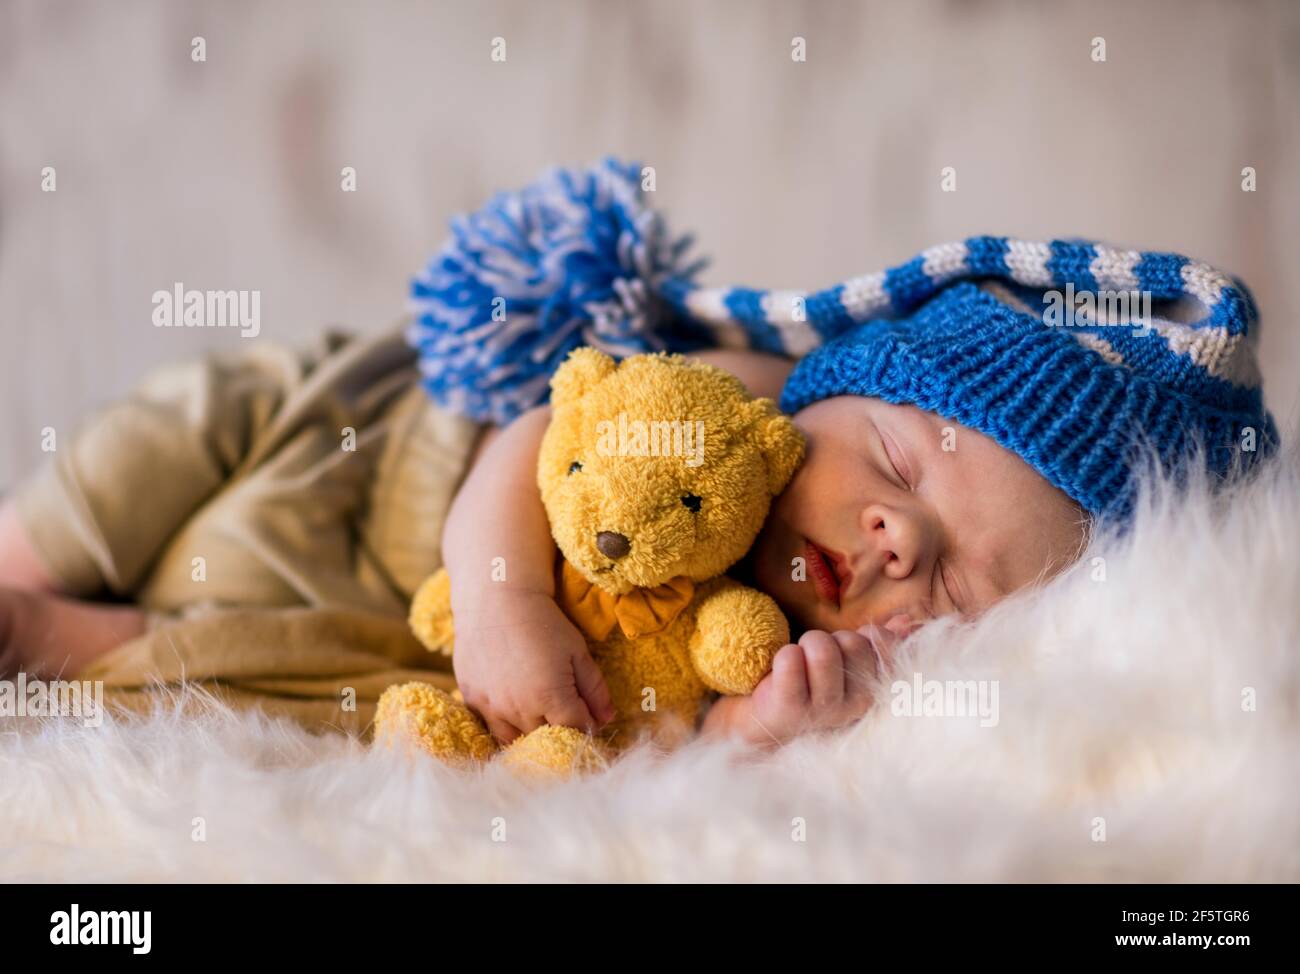 Bebé Recién Nacido Que Duerme En El Animal De Peluche. Fotos, retratos,  imágenes y fotografía de archivo libres de derecho. Image 63542073